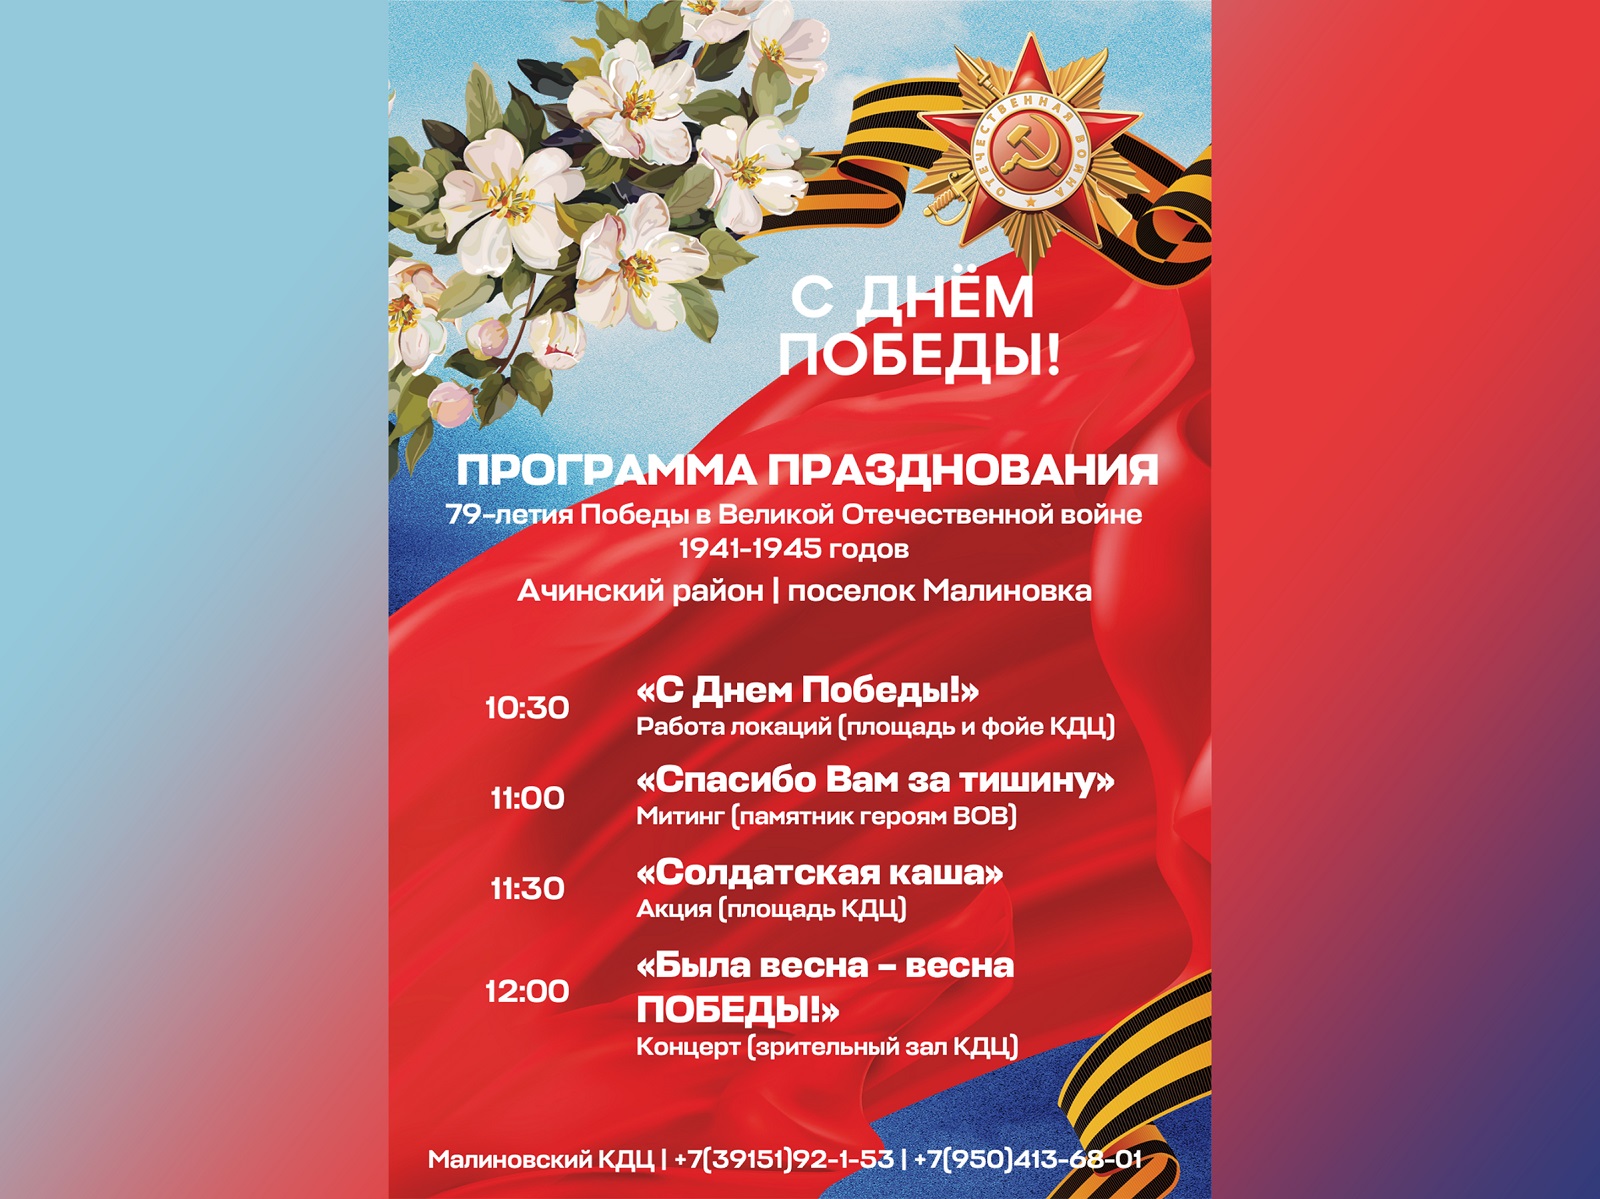 Празднование 79-летия Победы в Великой Отечественной войне.